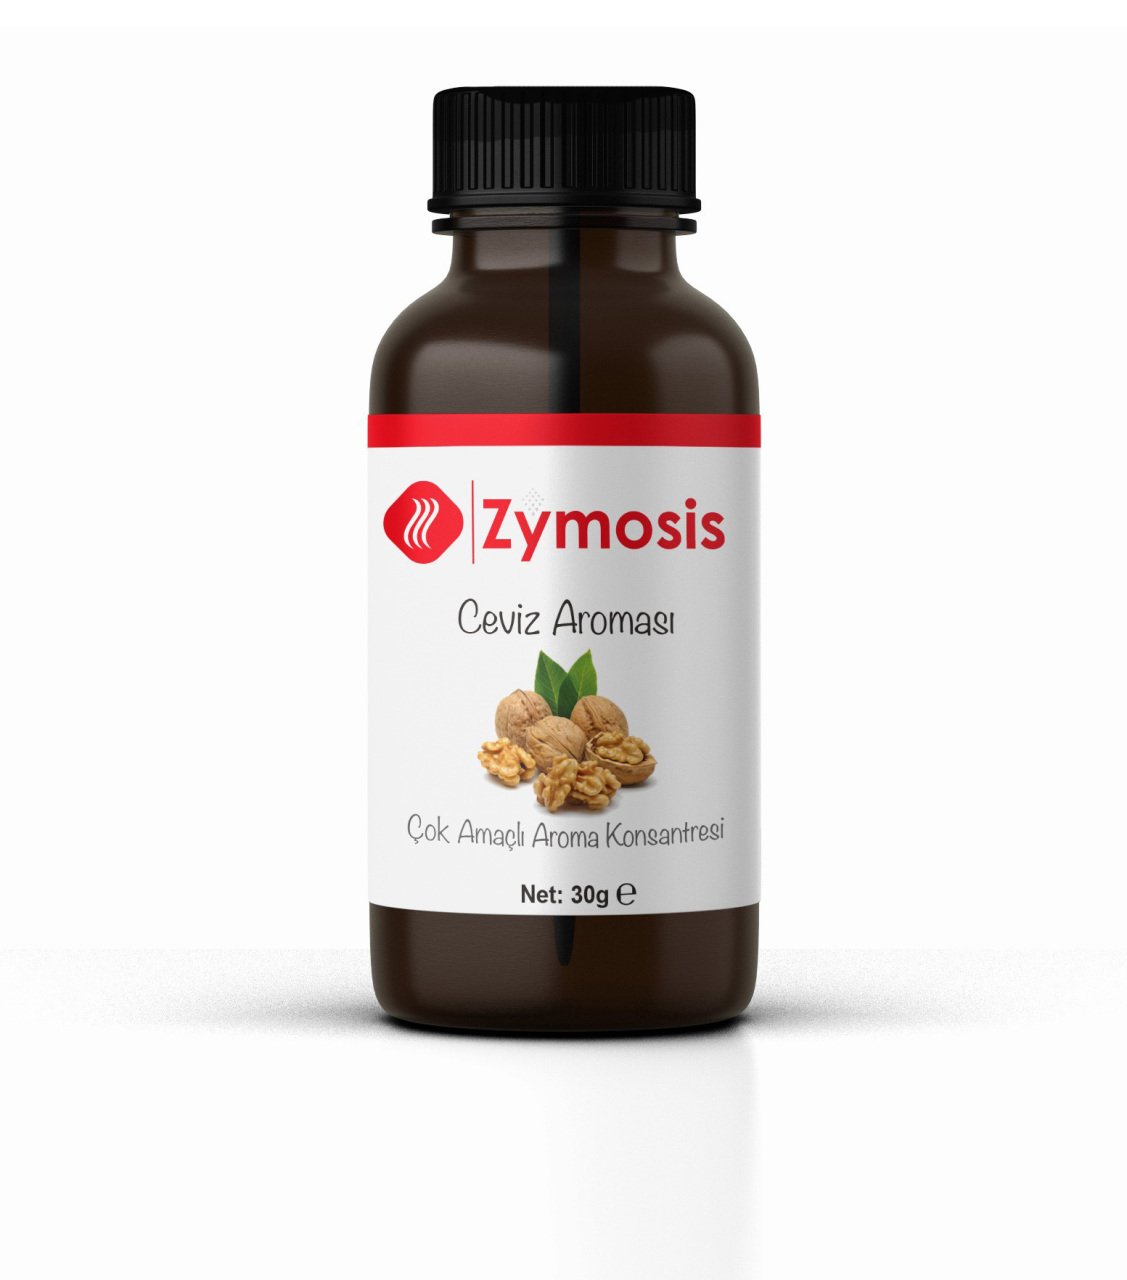 Zymosis Ceviz Aroması